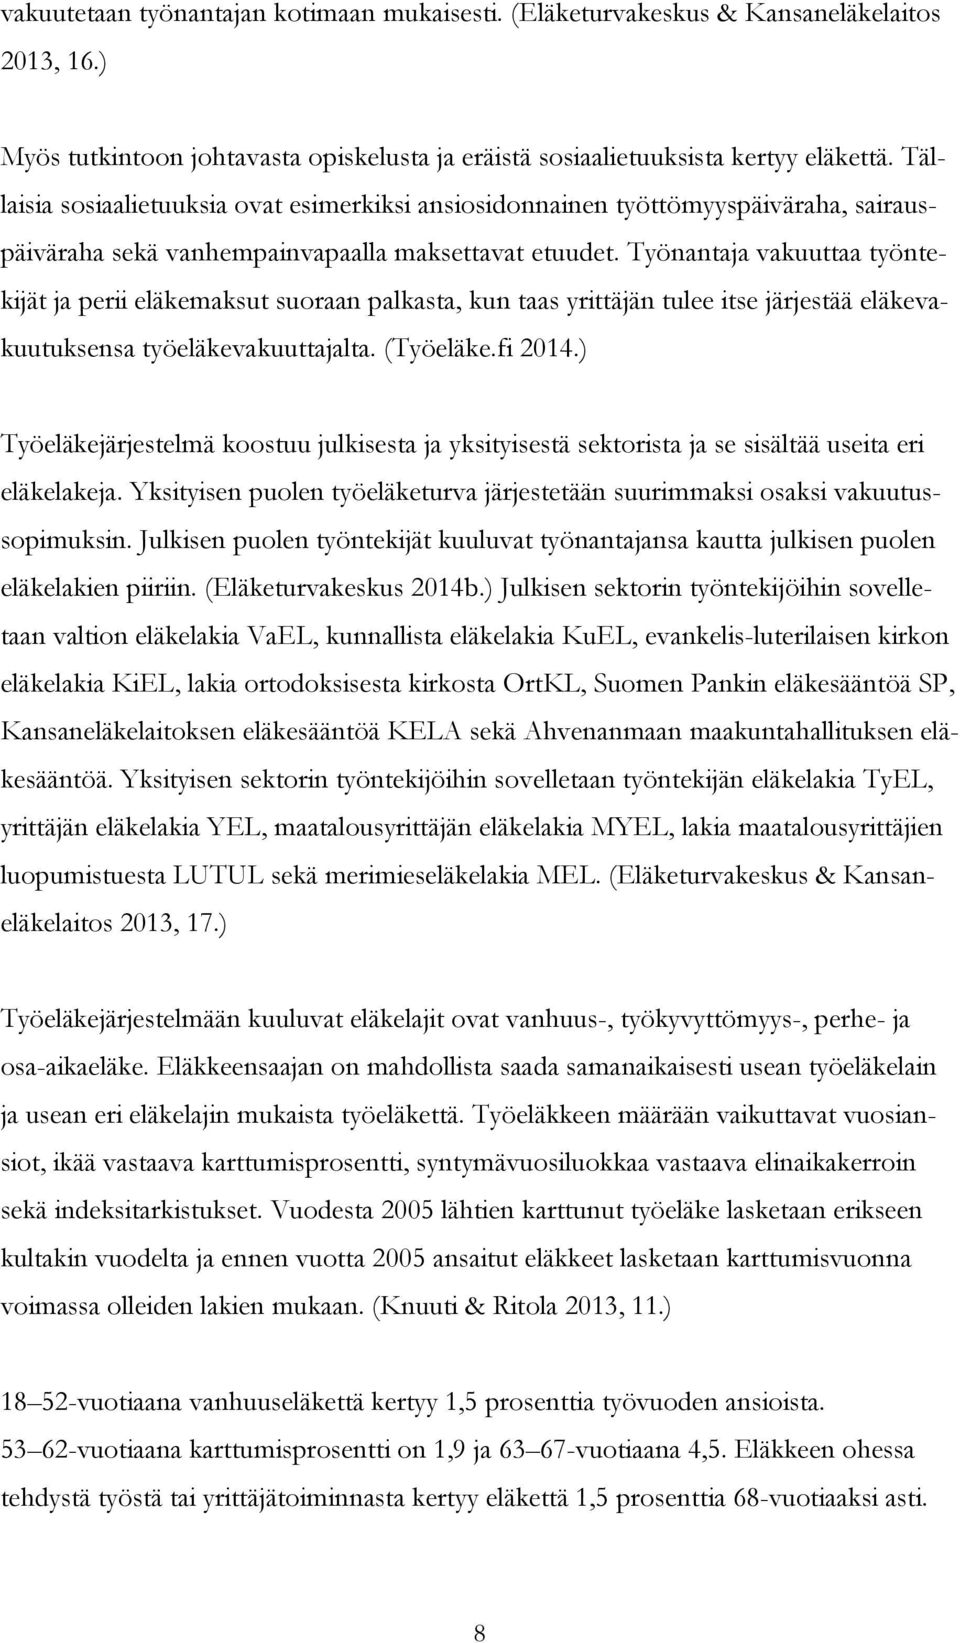 Työnantaja vakuuttaa työntekijät ja perii eläkemaksut suoraan palkasta, kun taas yrittäjän tulee itse järjestää eläkevakuutuksensa työeläkevakuuttajalta. (Työeläke.fi 2014.